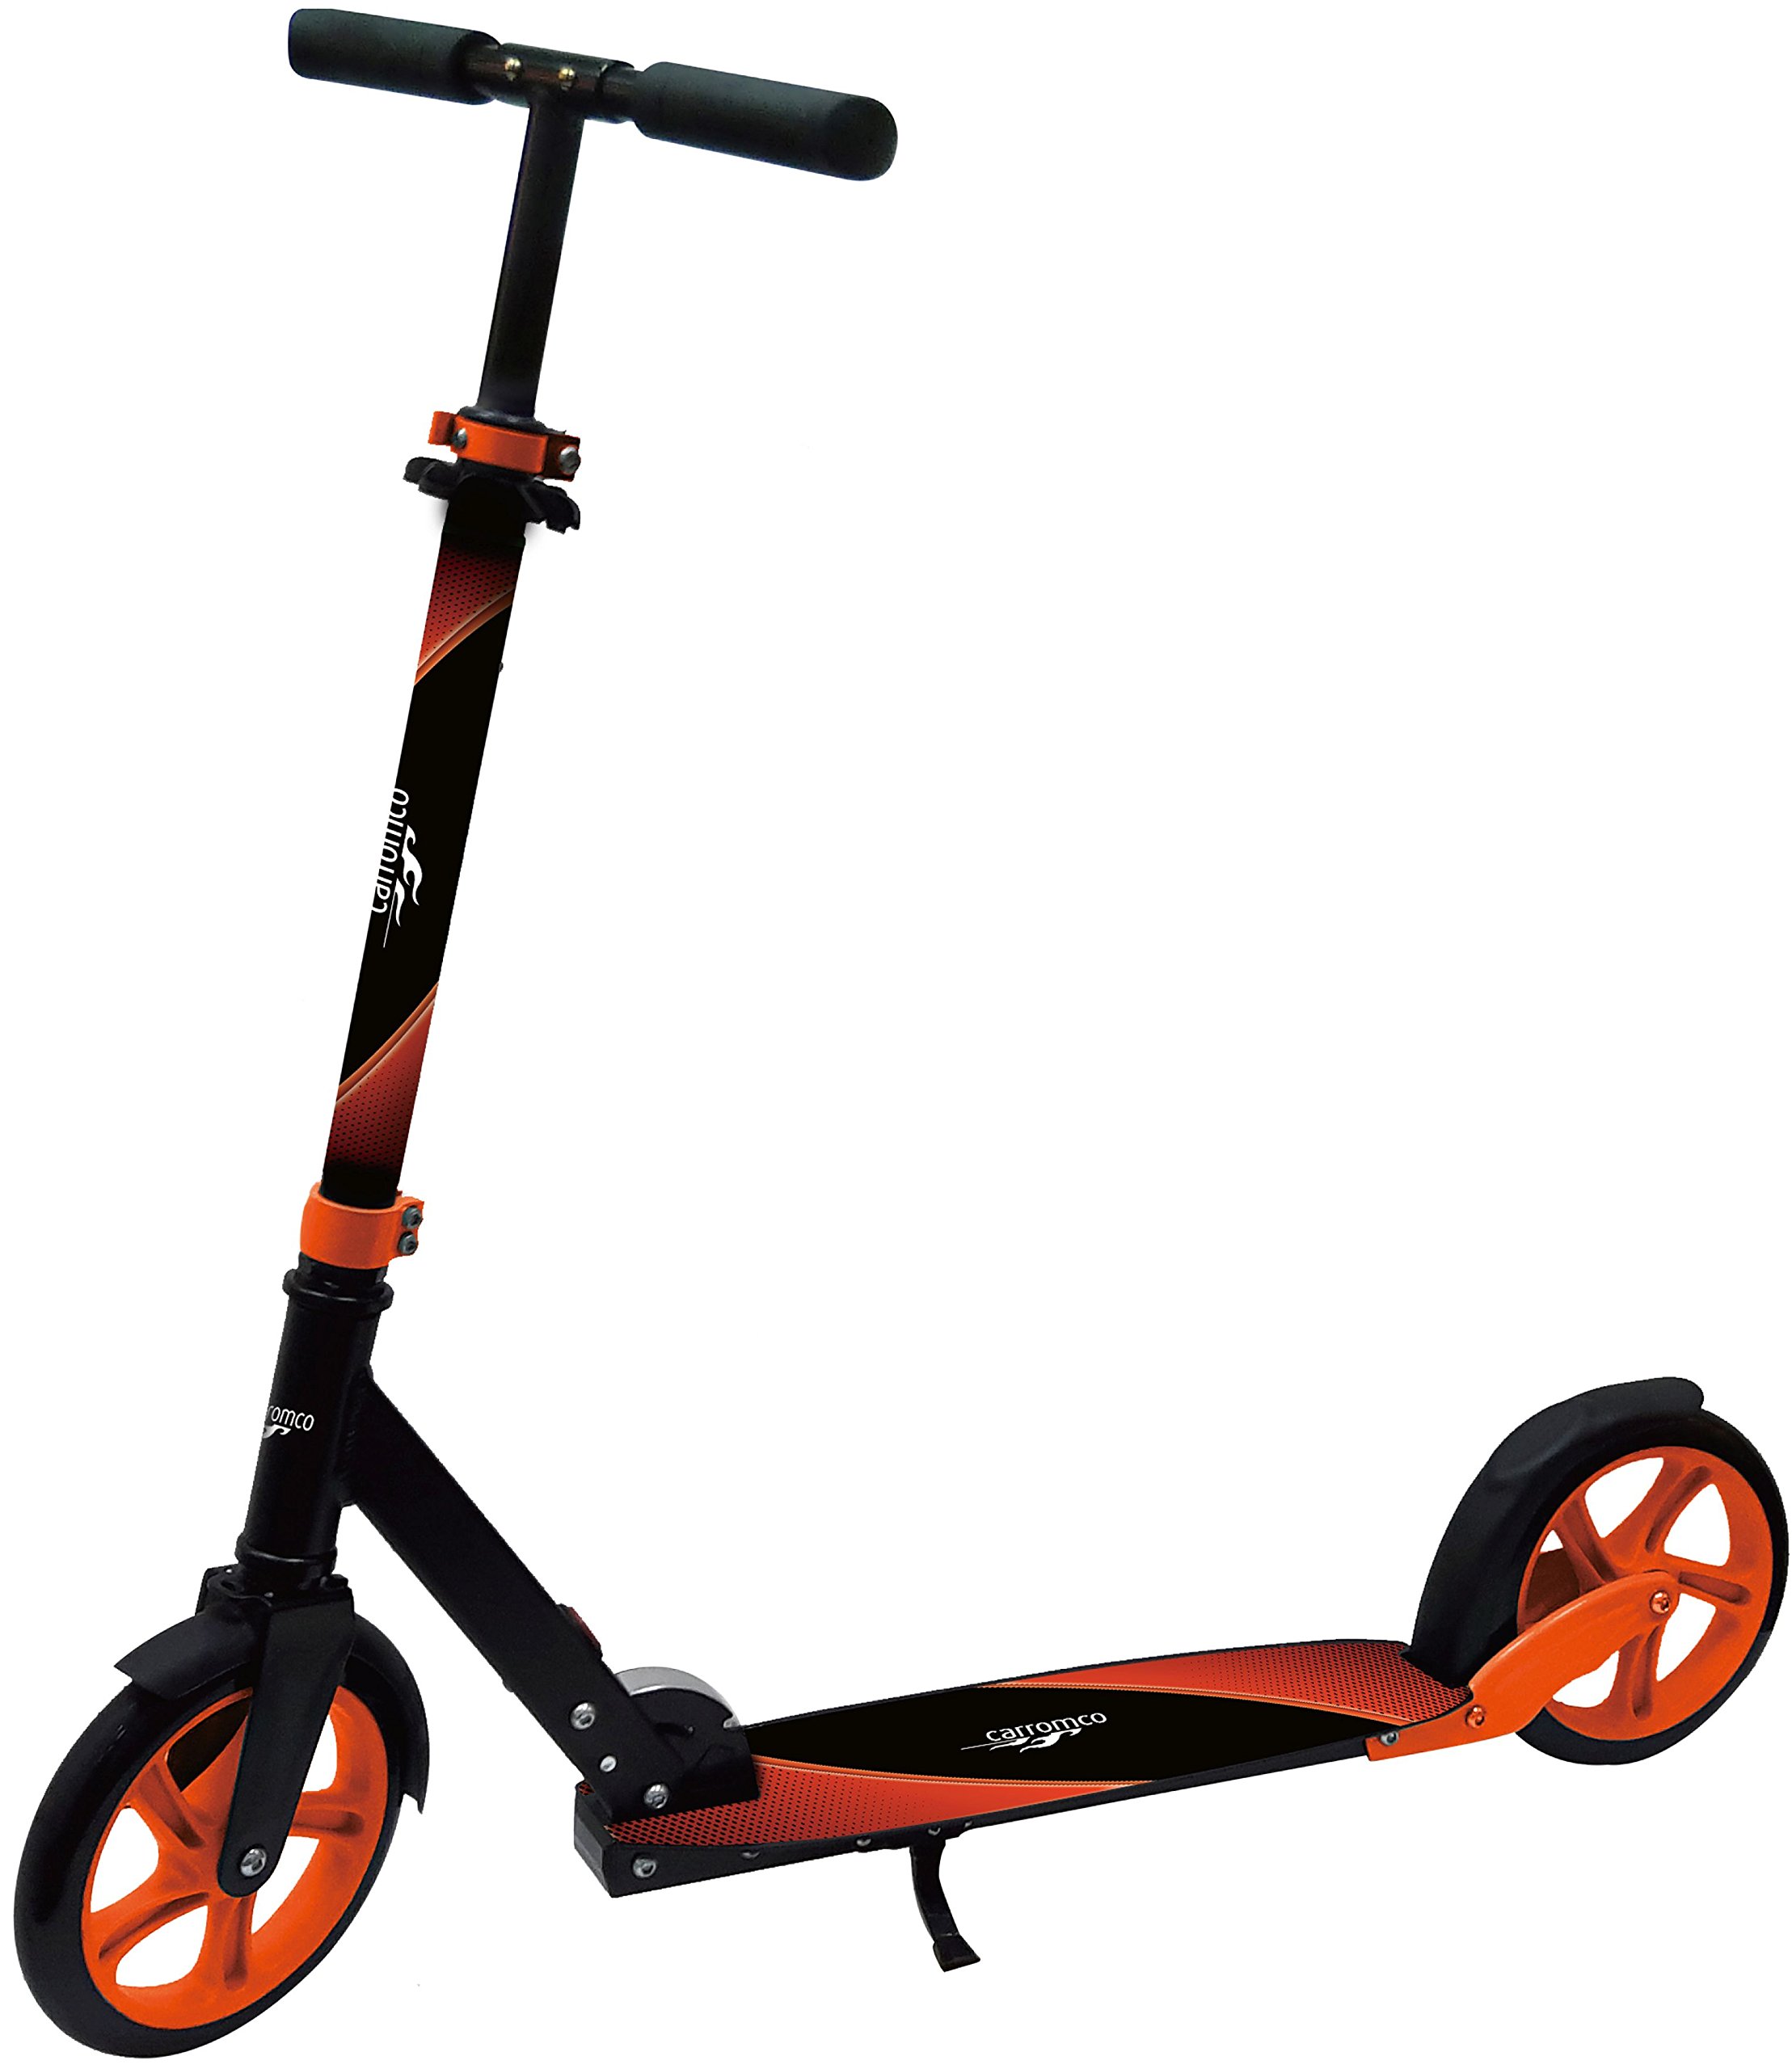 Carromco – Scooter XT-200 - Big Wheel Scooter - Lenkerhöhe: 87-101cm, City Roller mit patentiertem 1-klick Klappmechanismus, tiefergelegtem Deck und großen Reifen, ab 8 Jahre